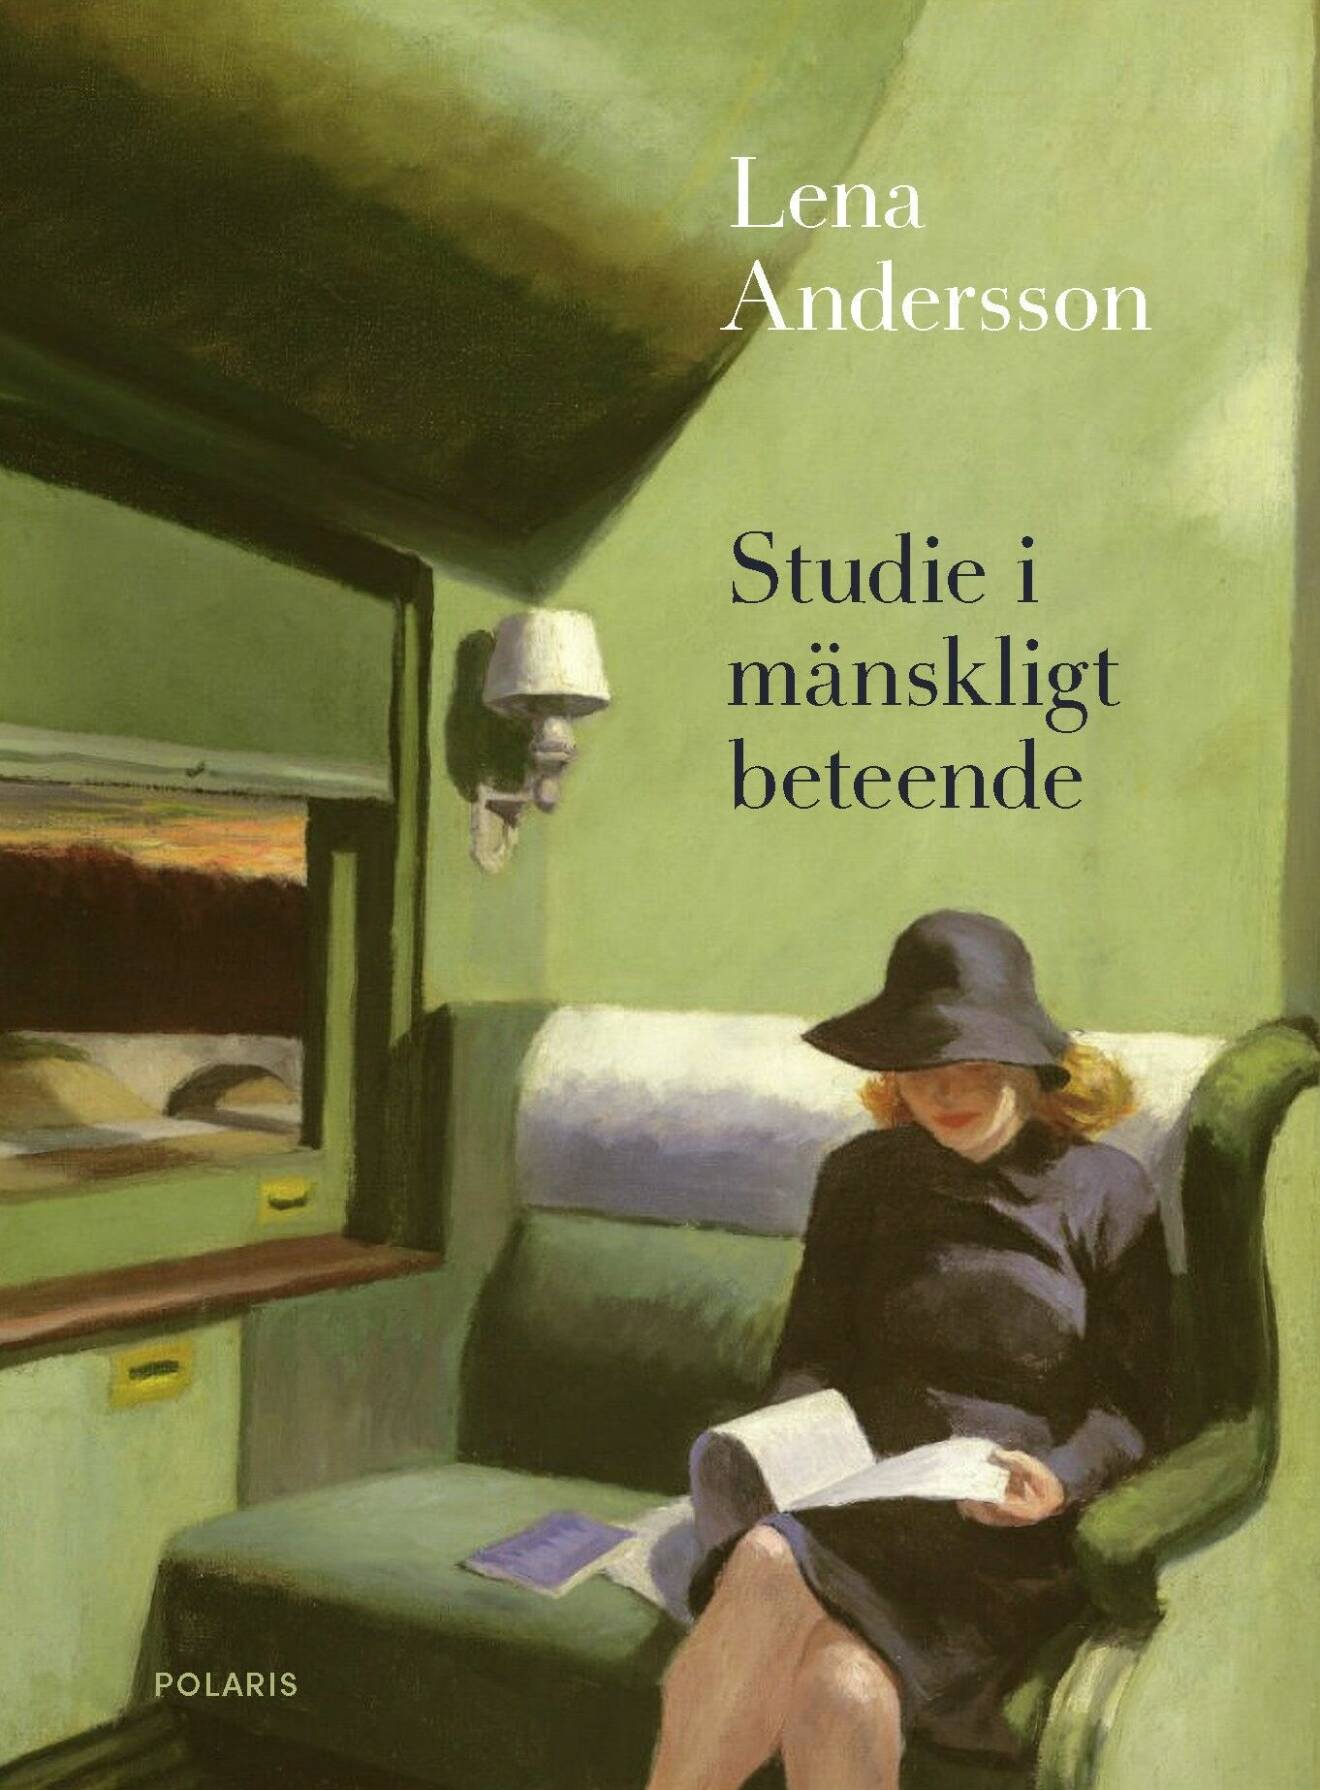 Studie i mänskligt beteende av Lena Andersson (Polaris).